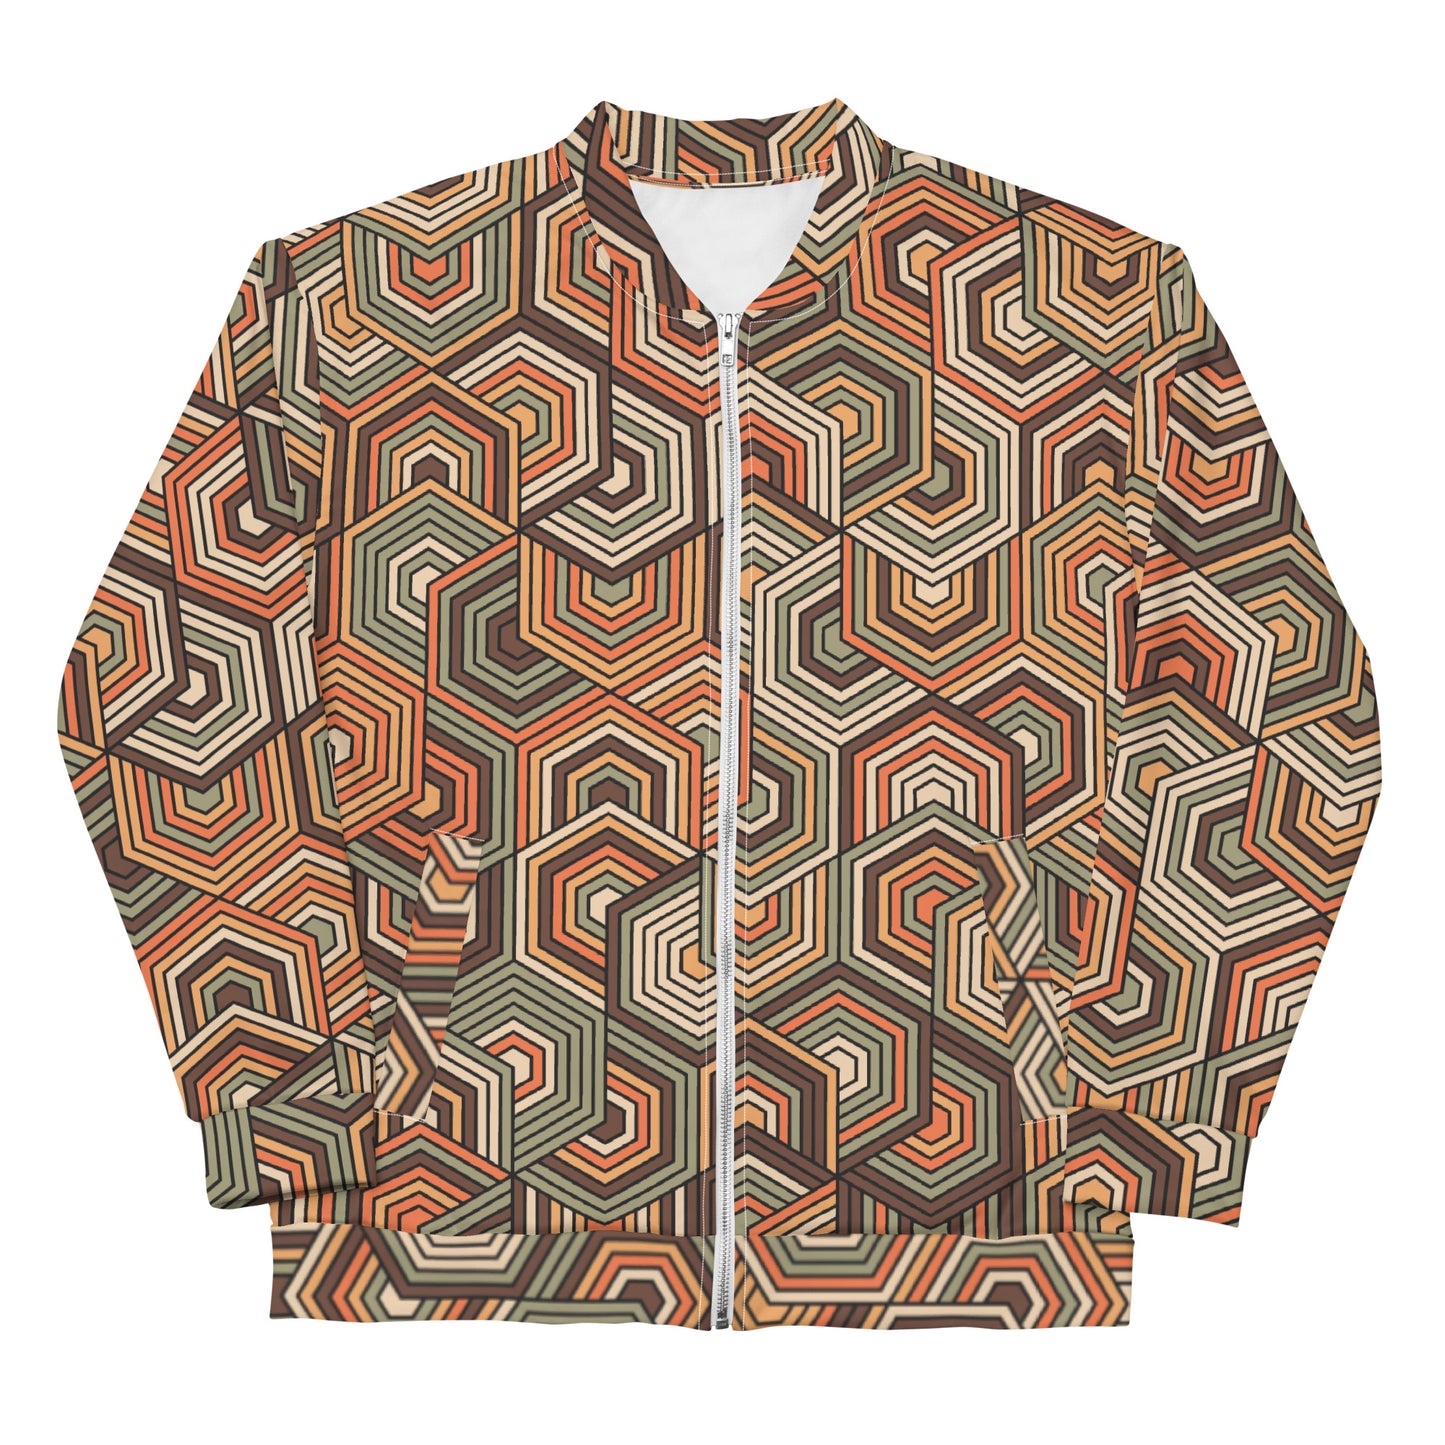 Hexagonal Retro Pattern - Sustainably Made Jacket